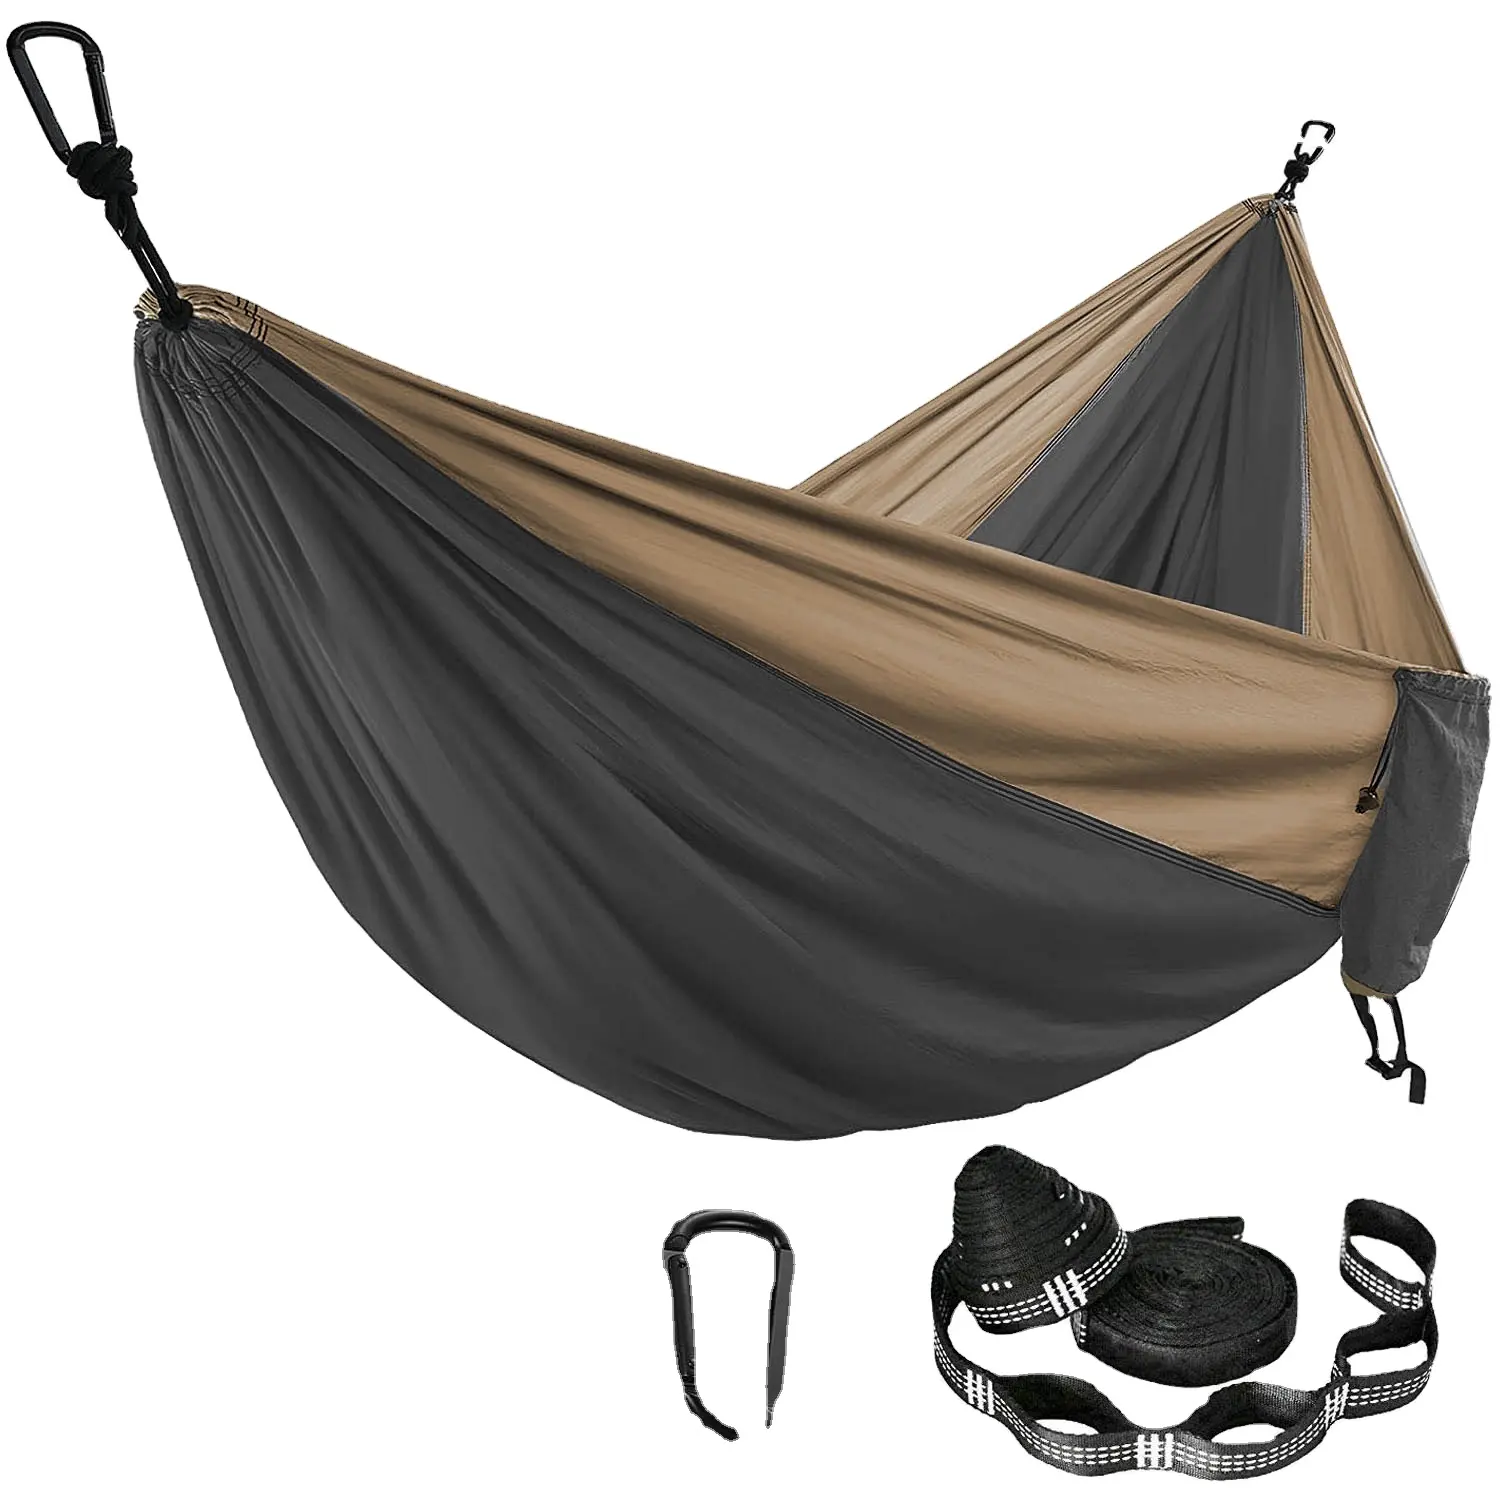 Hamaca de paracaídas de Color sólido con correas para hamaca y mosquetón negro, muebles de exterior para dos personas para viajes de supervivencia y acampada